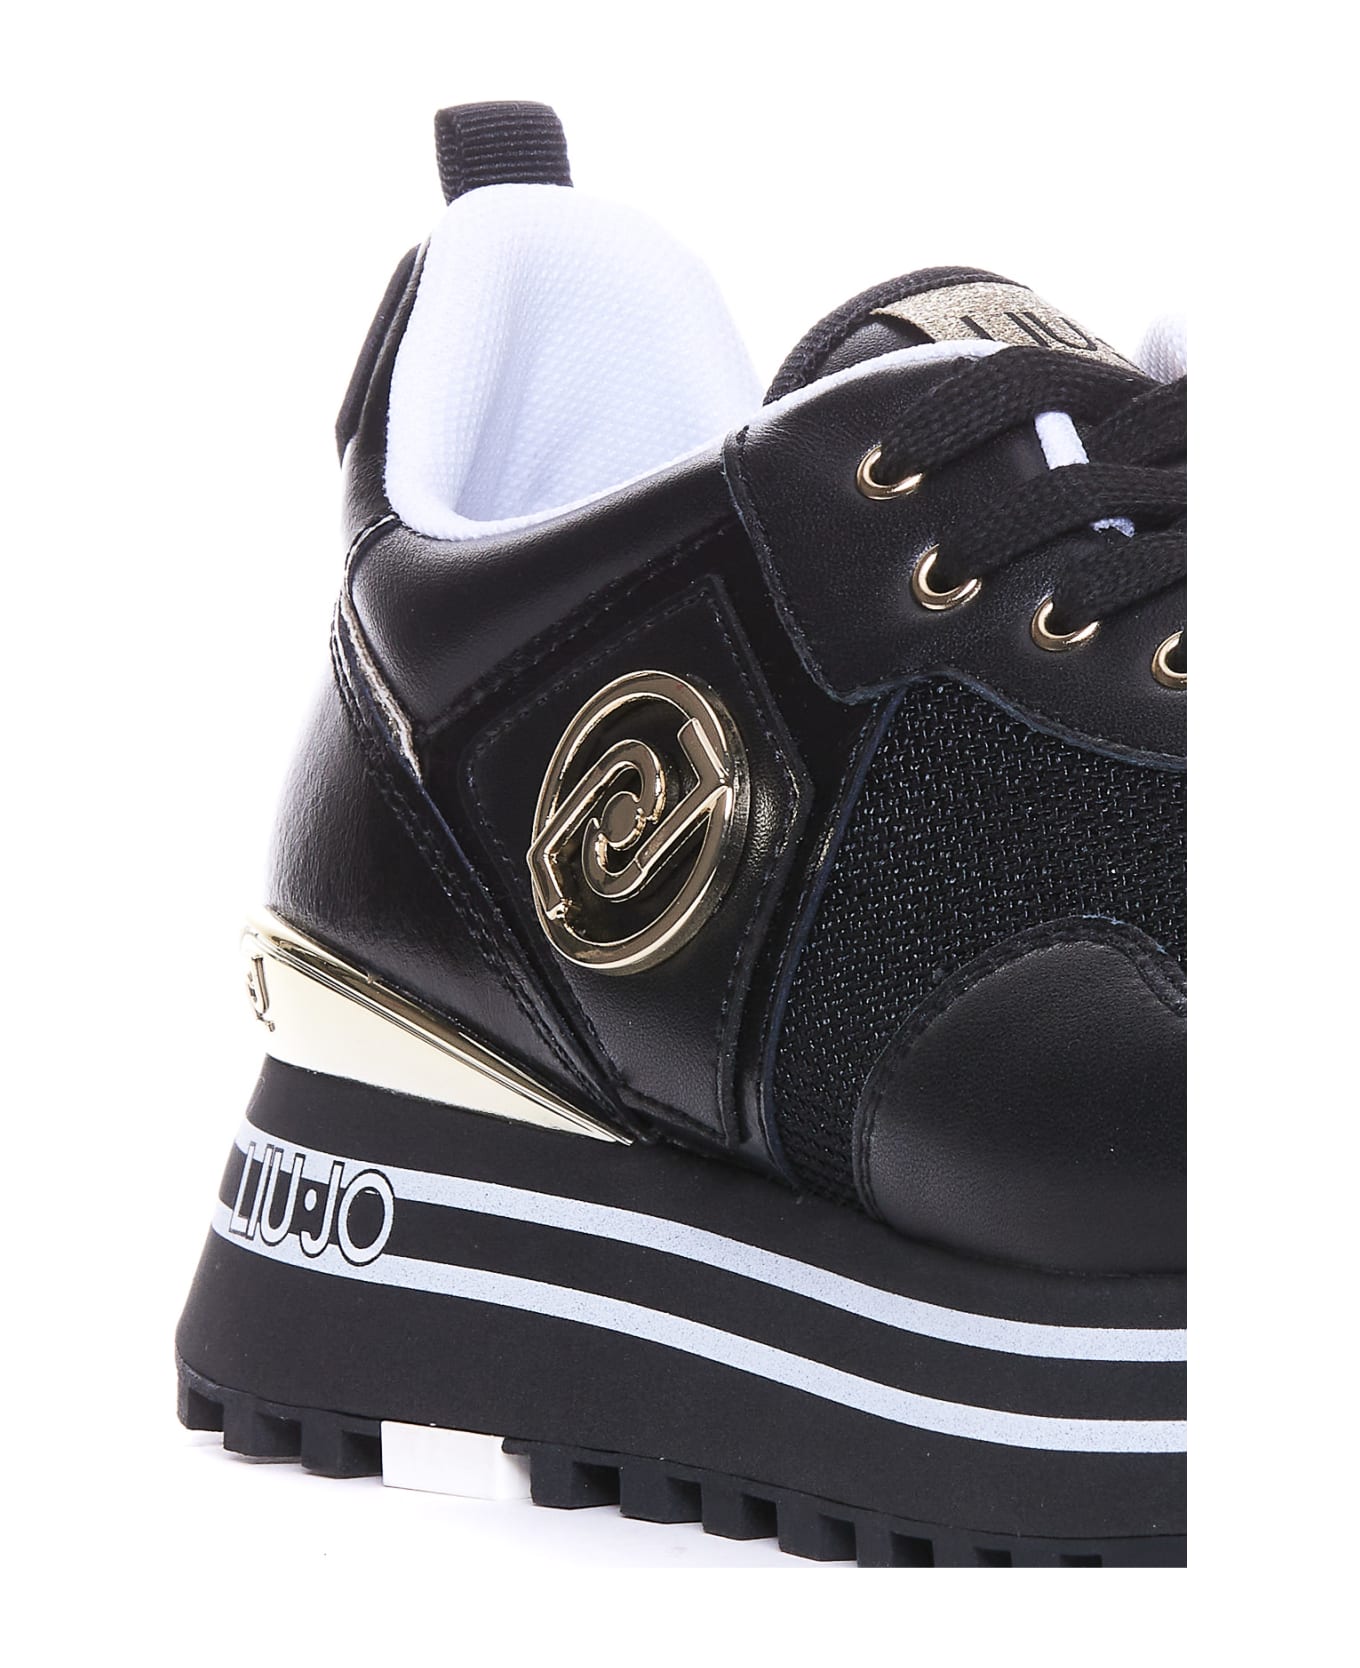 Liu-Jo Maxi Wander Sneakers - Black